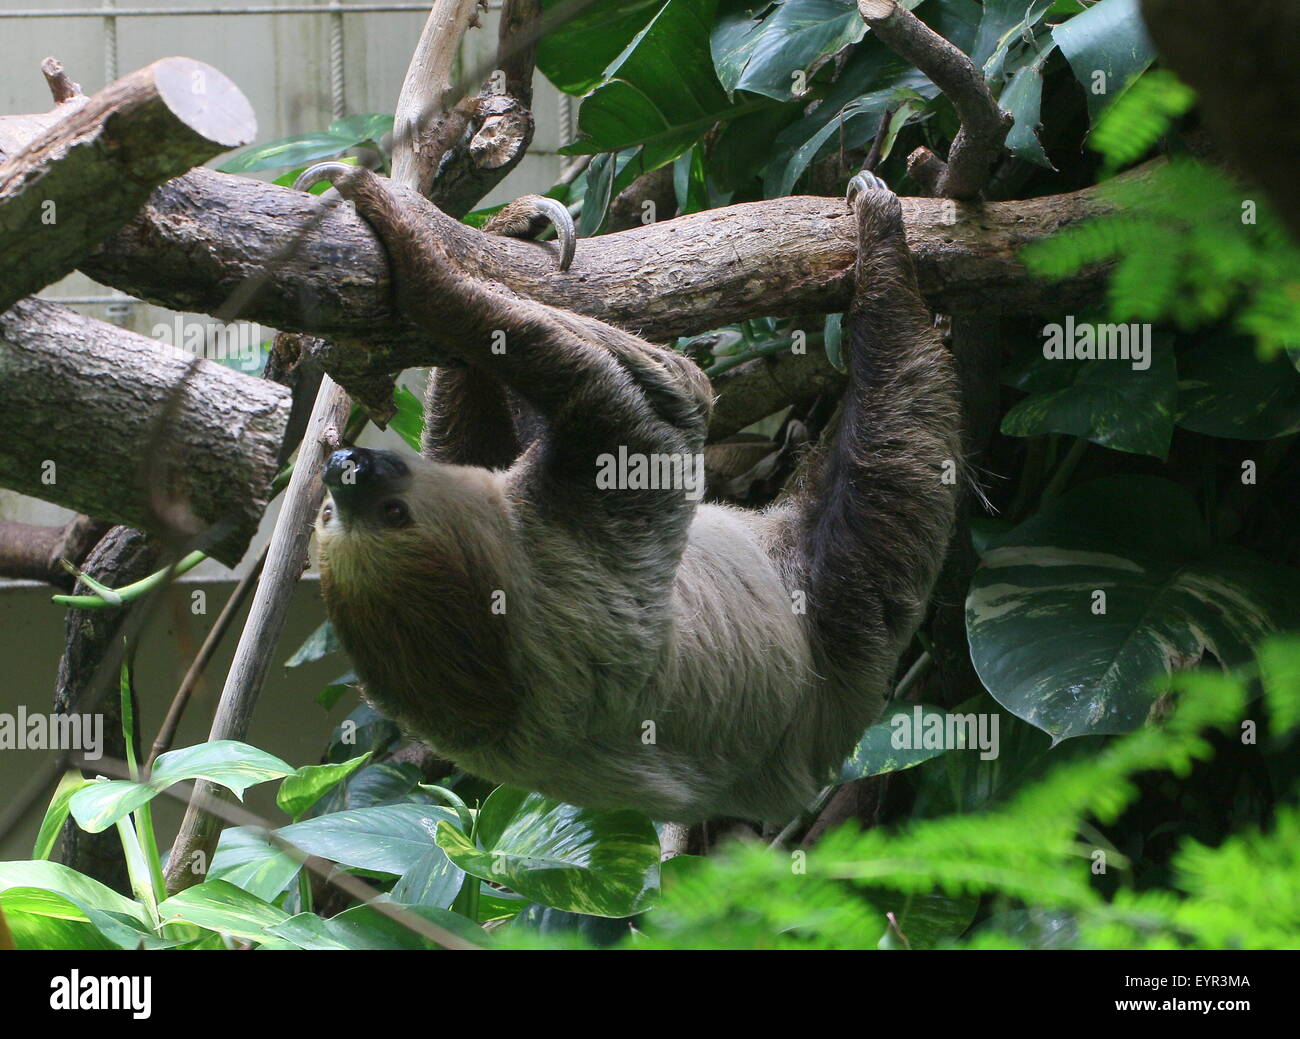 L'Amérique du Sud deux orteils, sloth Linné ou dans le sud de deux doigts (Choloepus didactylus) paresseux au Zoo Dierenpark emmen, Pays-Bas Banque D'Images